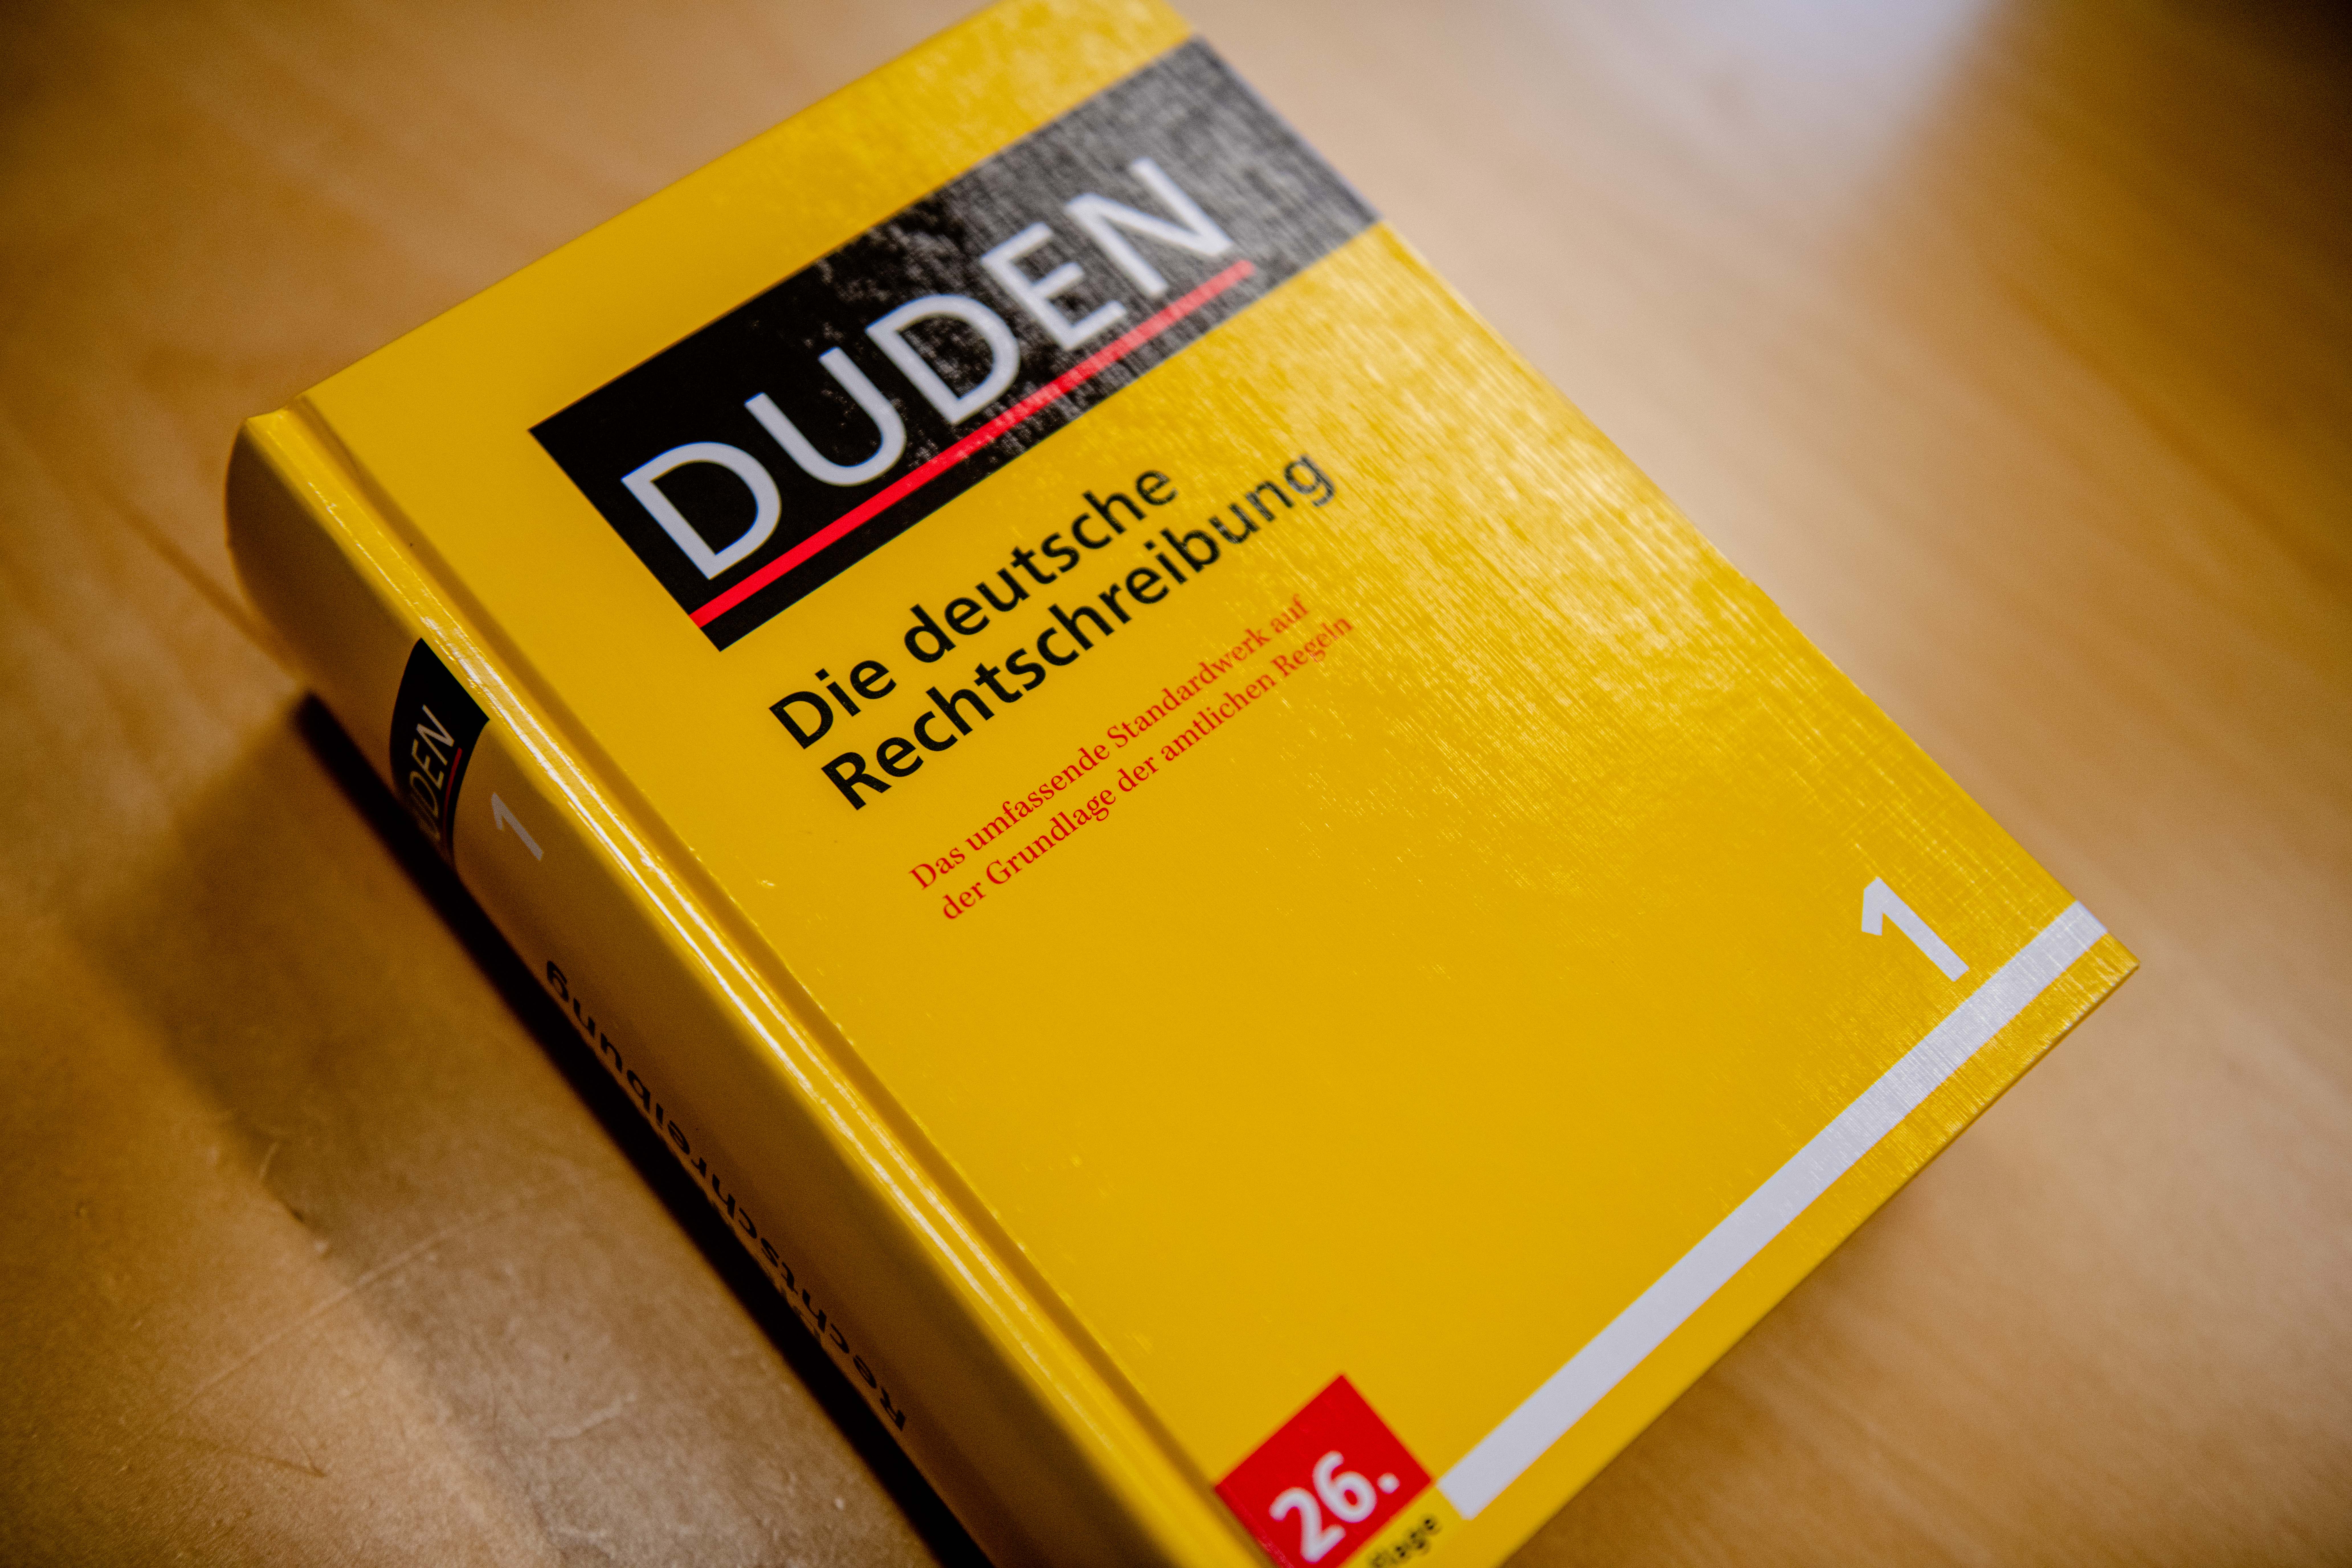 Buch "Die deutsche Rechtschreibung" vom Duden-Verlag